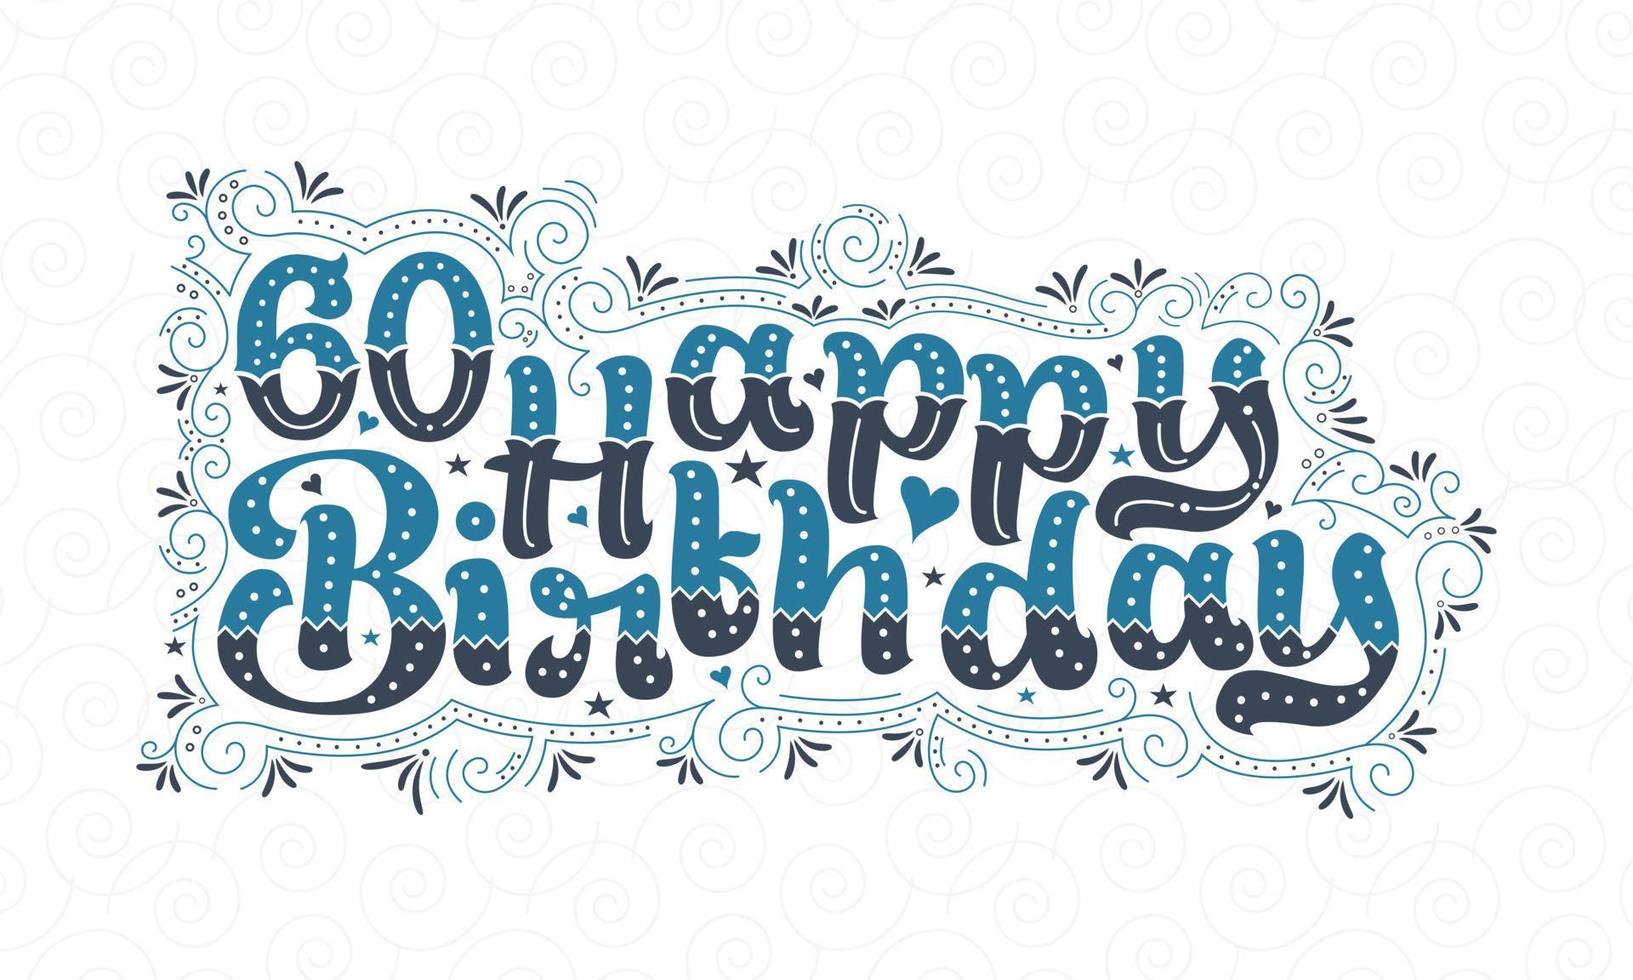 60:e grattis på födelsedagen bokstäver, 60 år födelsedag vacker typografi design med blå och svarta prickar, linjer och blad. vektor